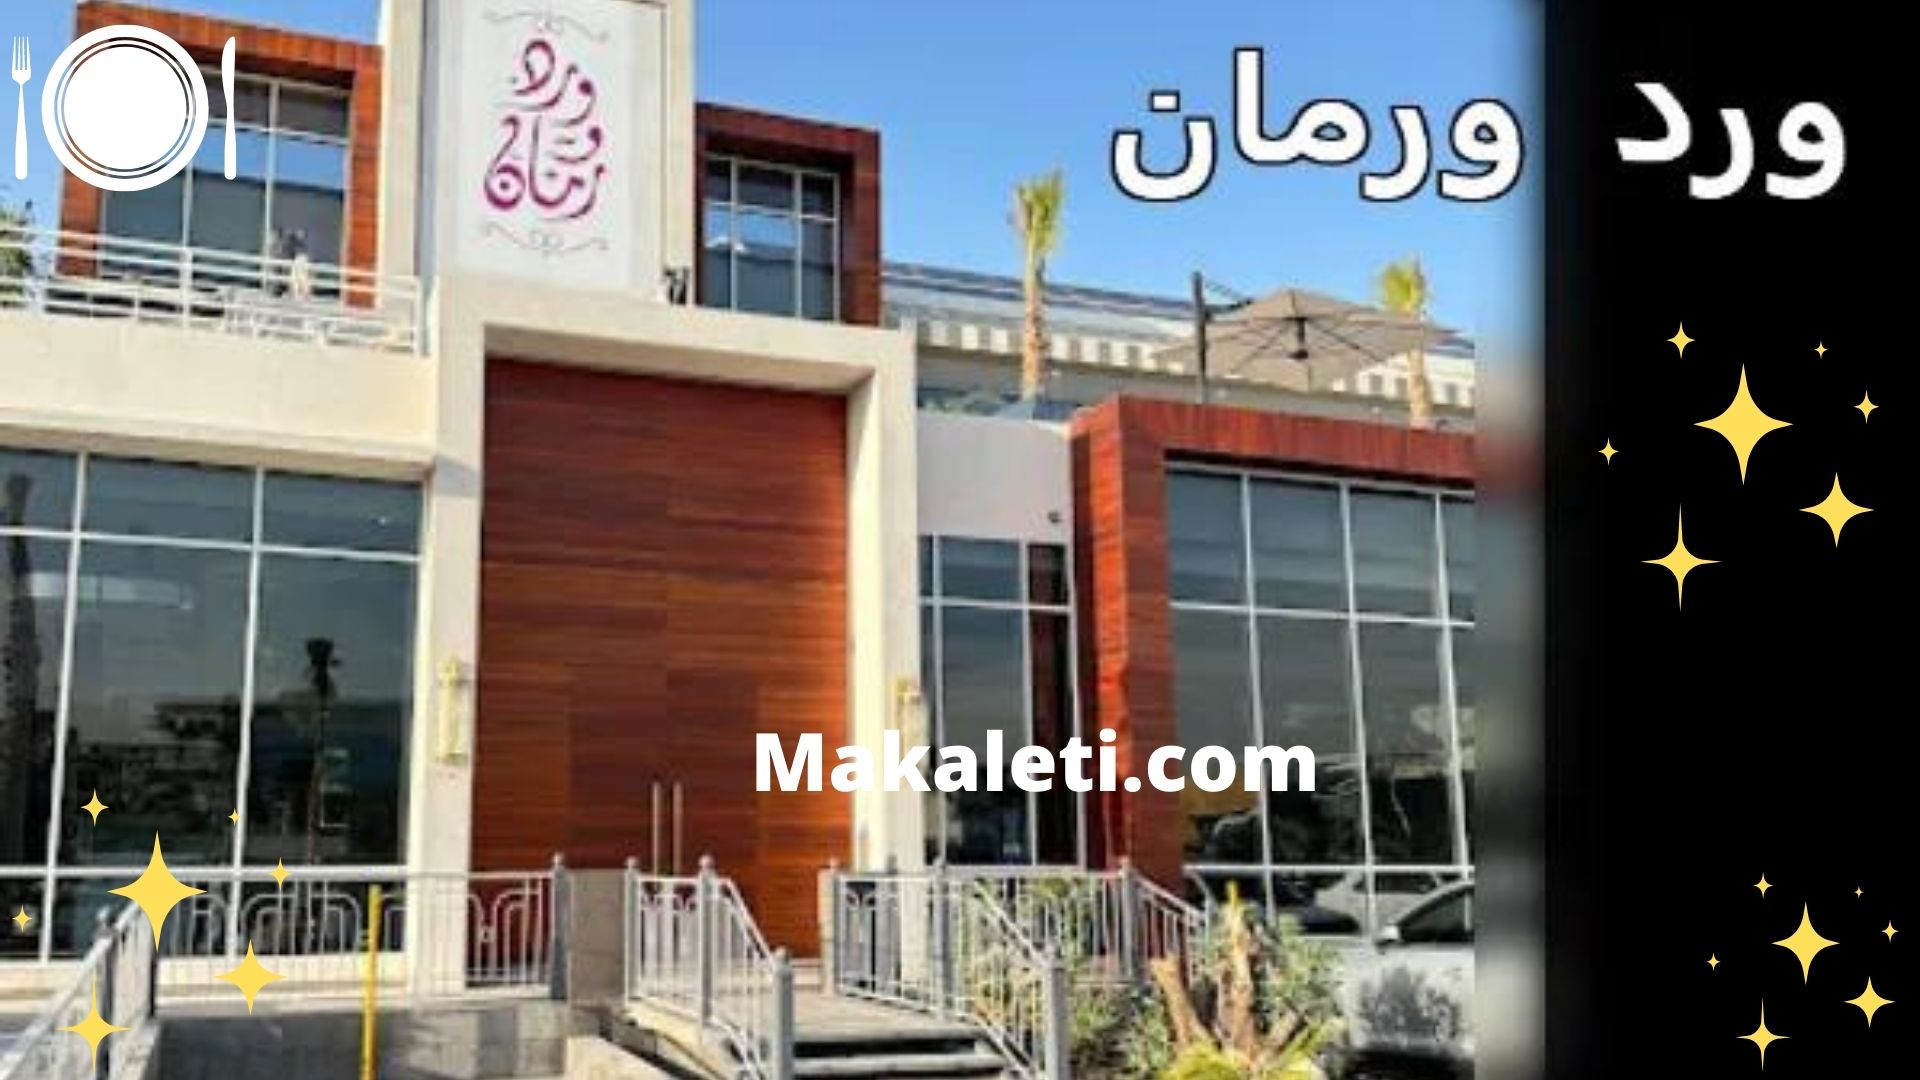 مطعم ورد و رمان - أكبر مطعم بمدينة الرياض